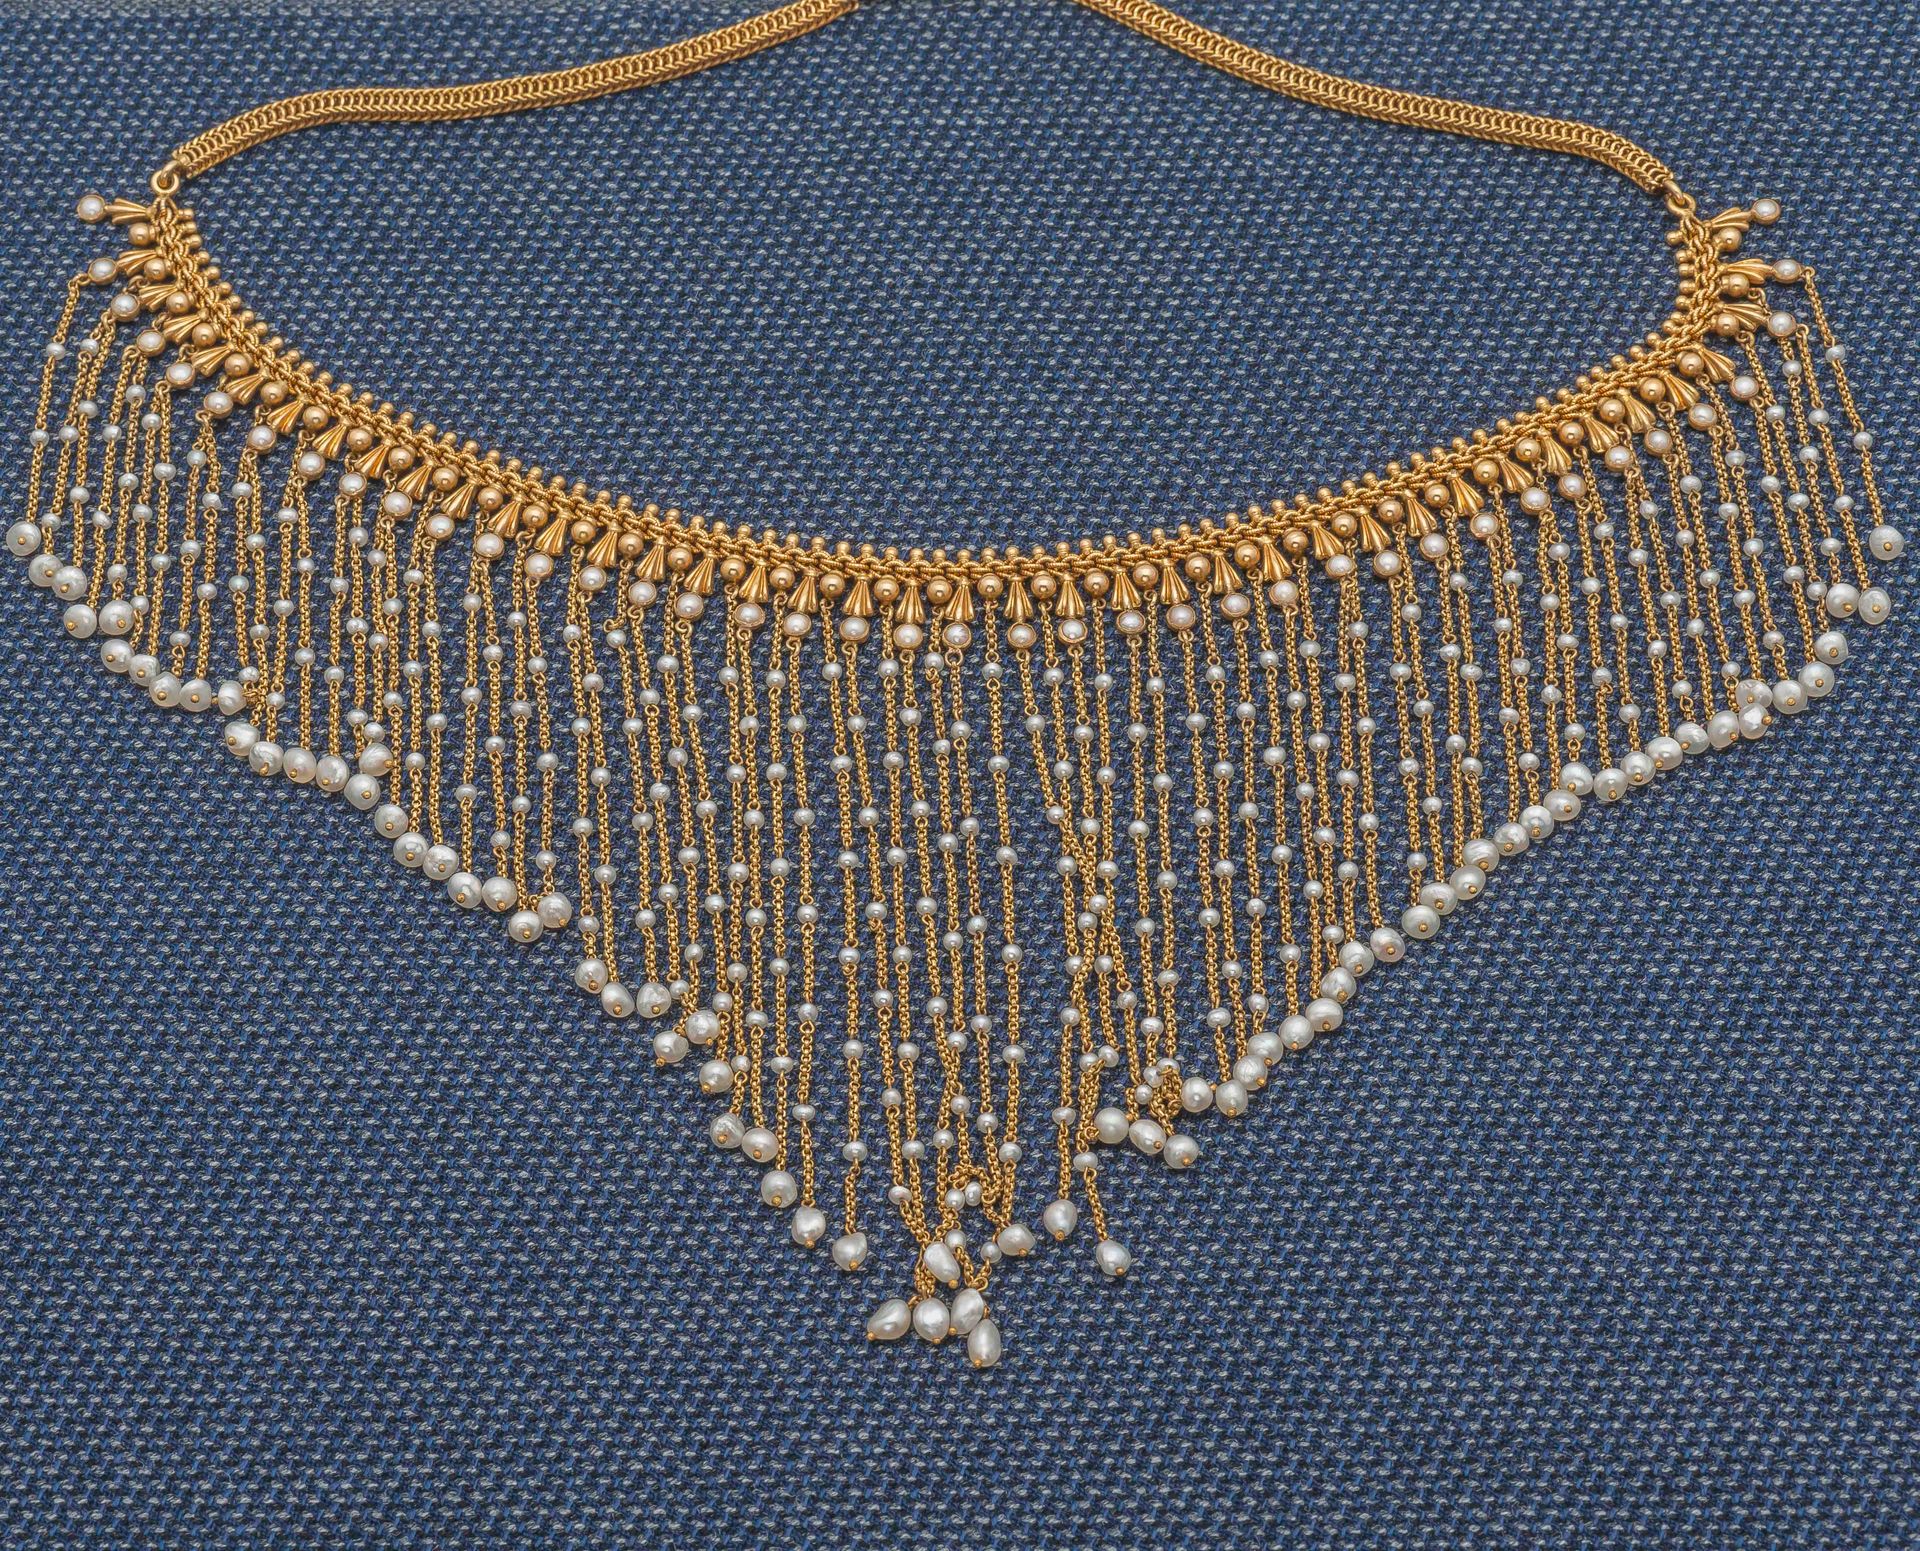 Null 18K黄金(750‰)帷幕项链，链子的中央部分有凹凸不平的珍珠装饰，托着一连串的落下的链子，上面装饰着小珍珠。19世纪末，20世纪初。

颈部尺寸：3&hellip;